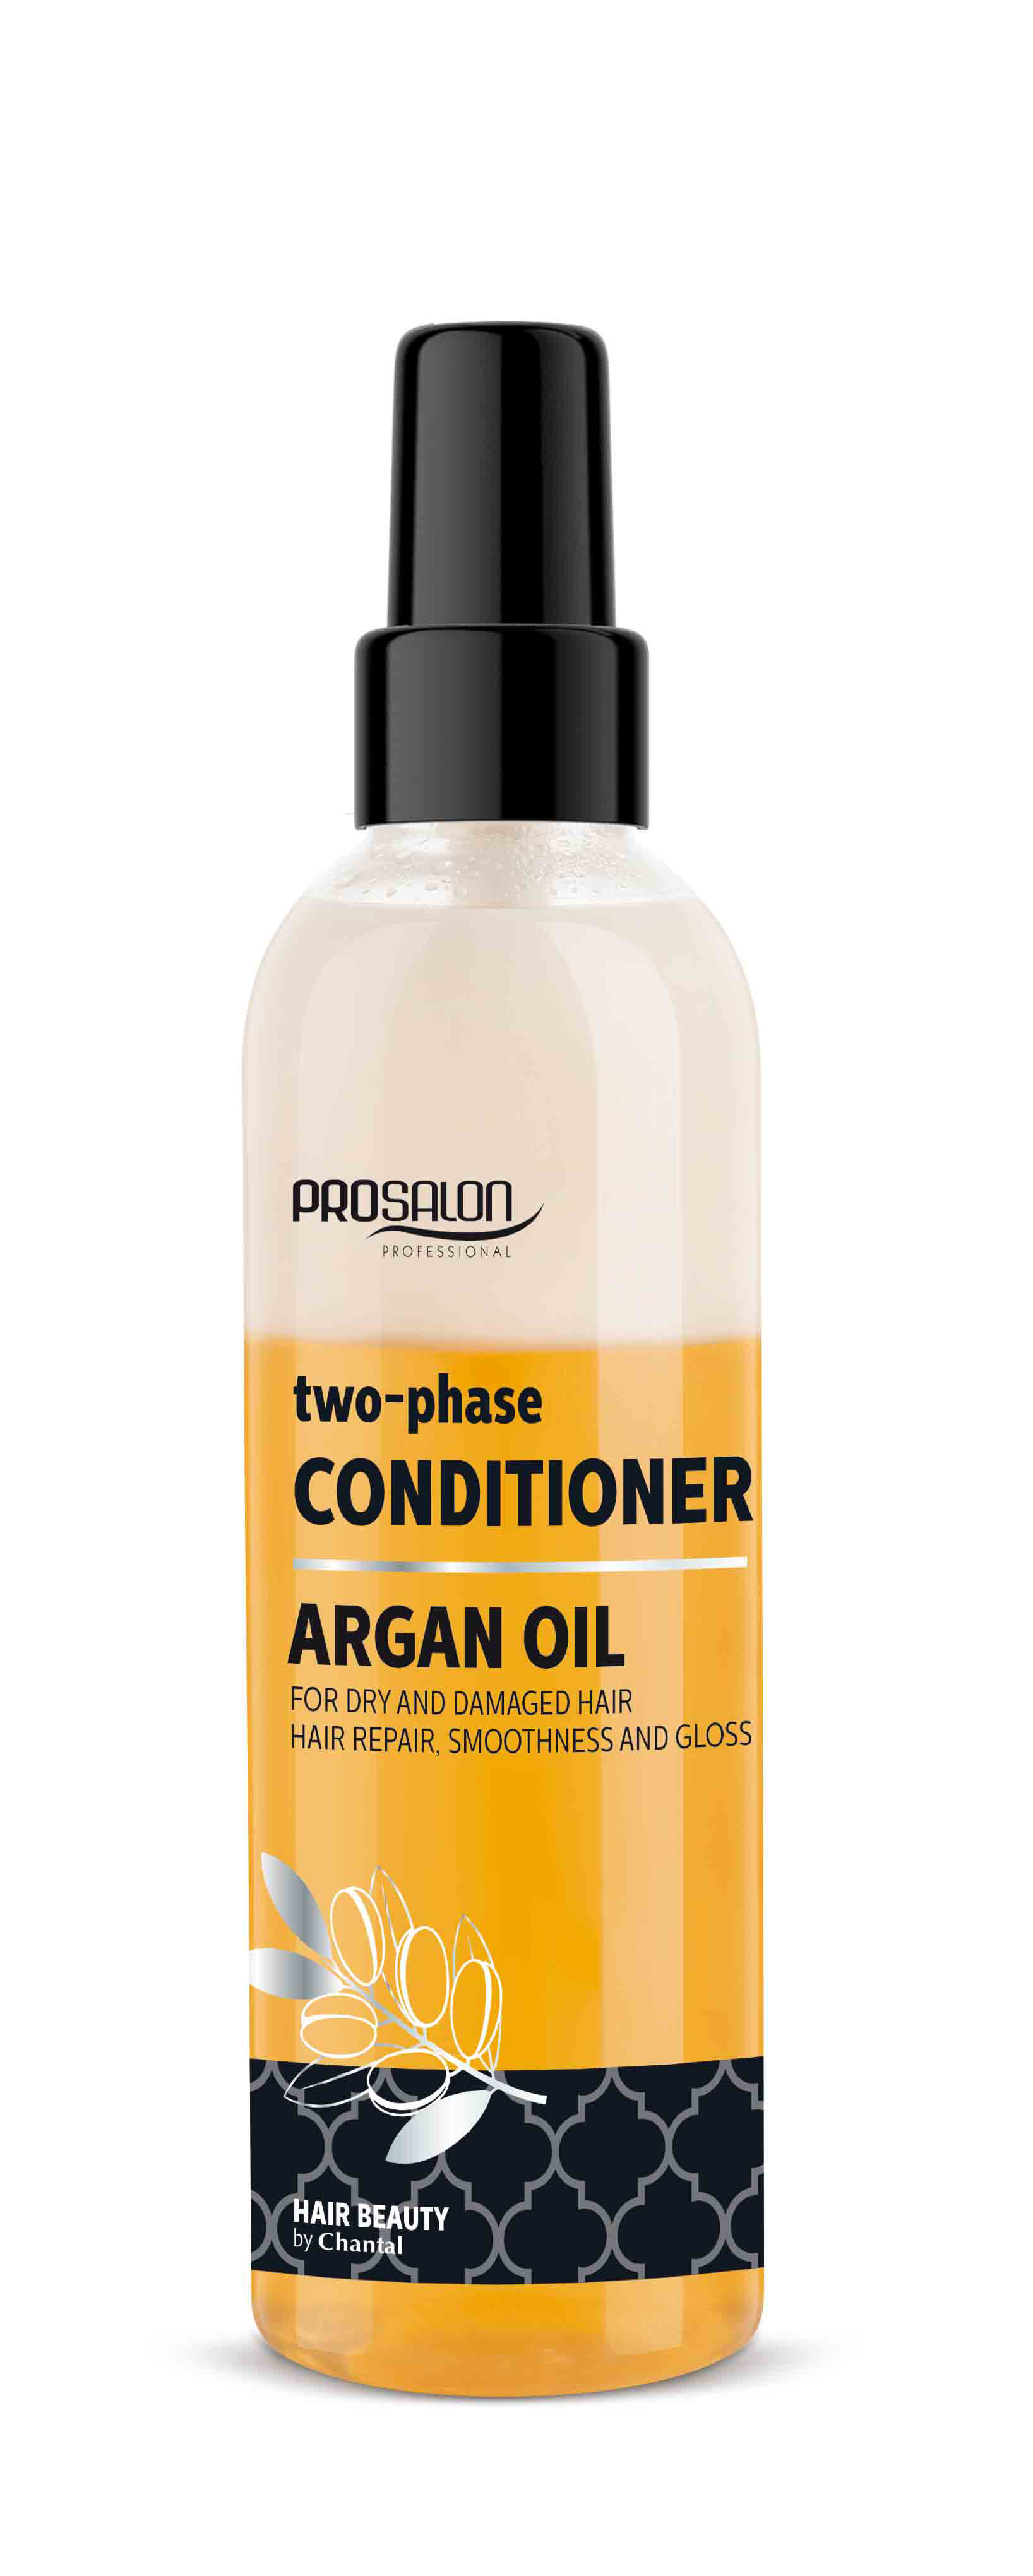 Prosalon Argan Oil разглаживающий двухфазный кондиционер для волос, 200 г